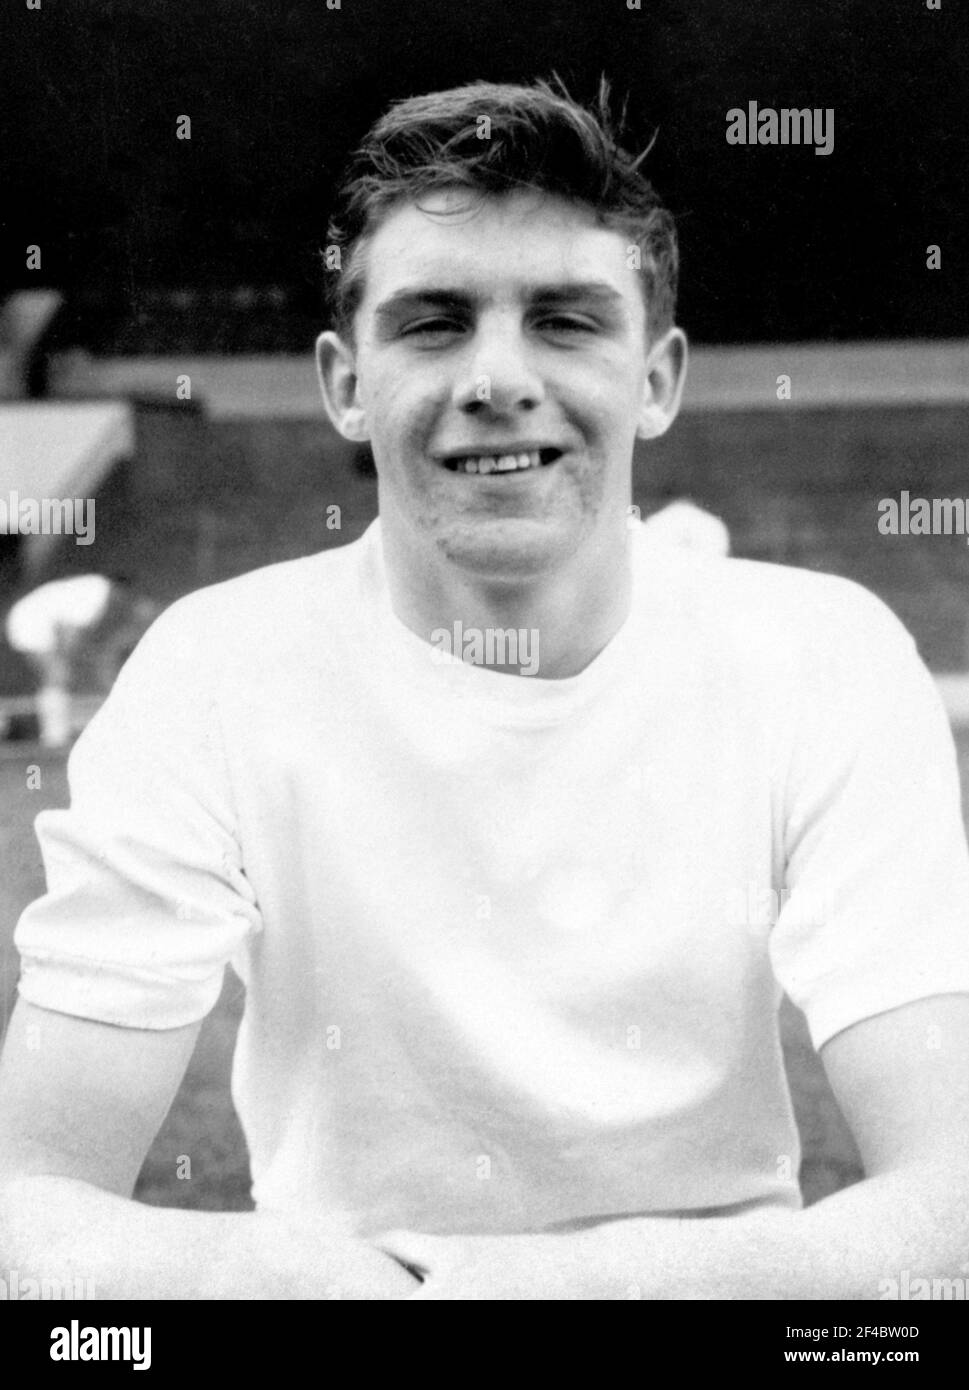 Foto de archivo fechada 12-09-1962 de Peter Lorimer de Leeds United. Fecha de emisión: Sábado 20 de marzo de 2021. Foto de stock